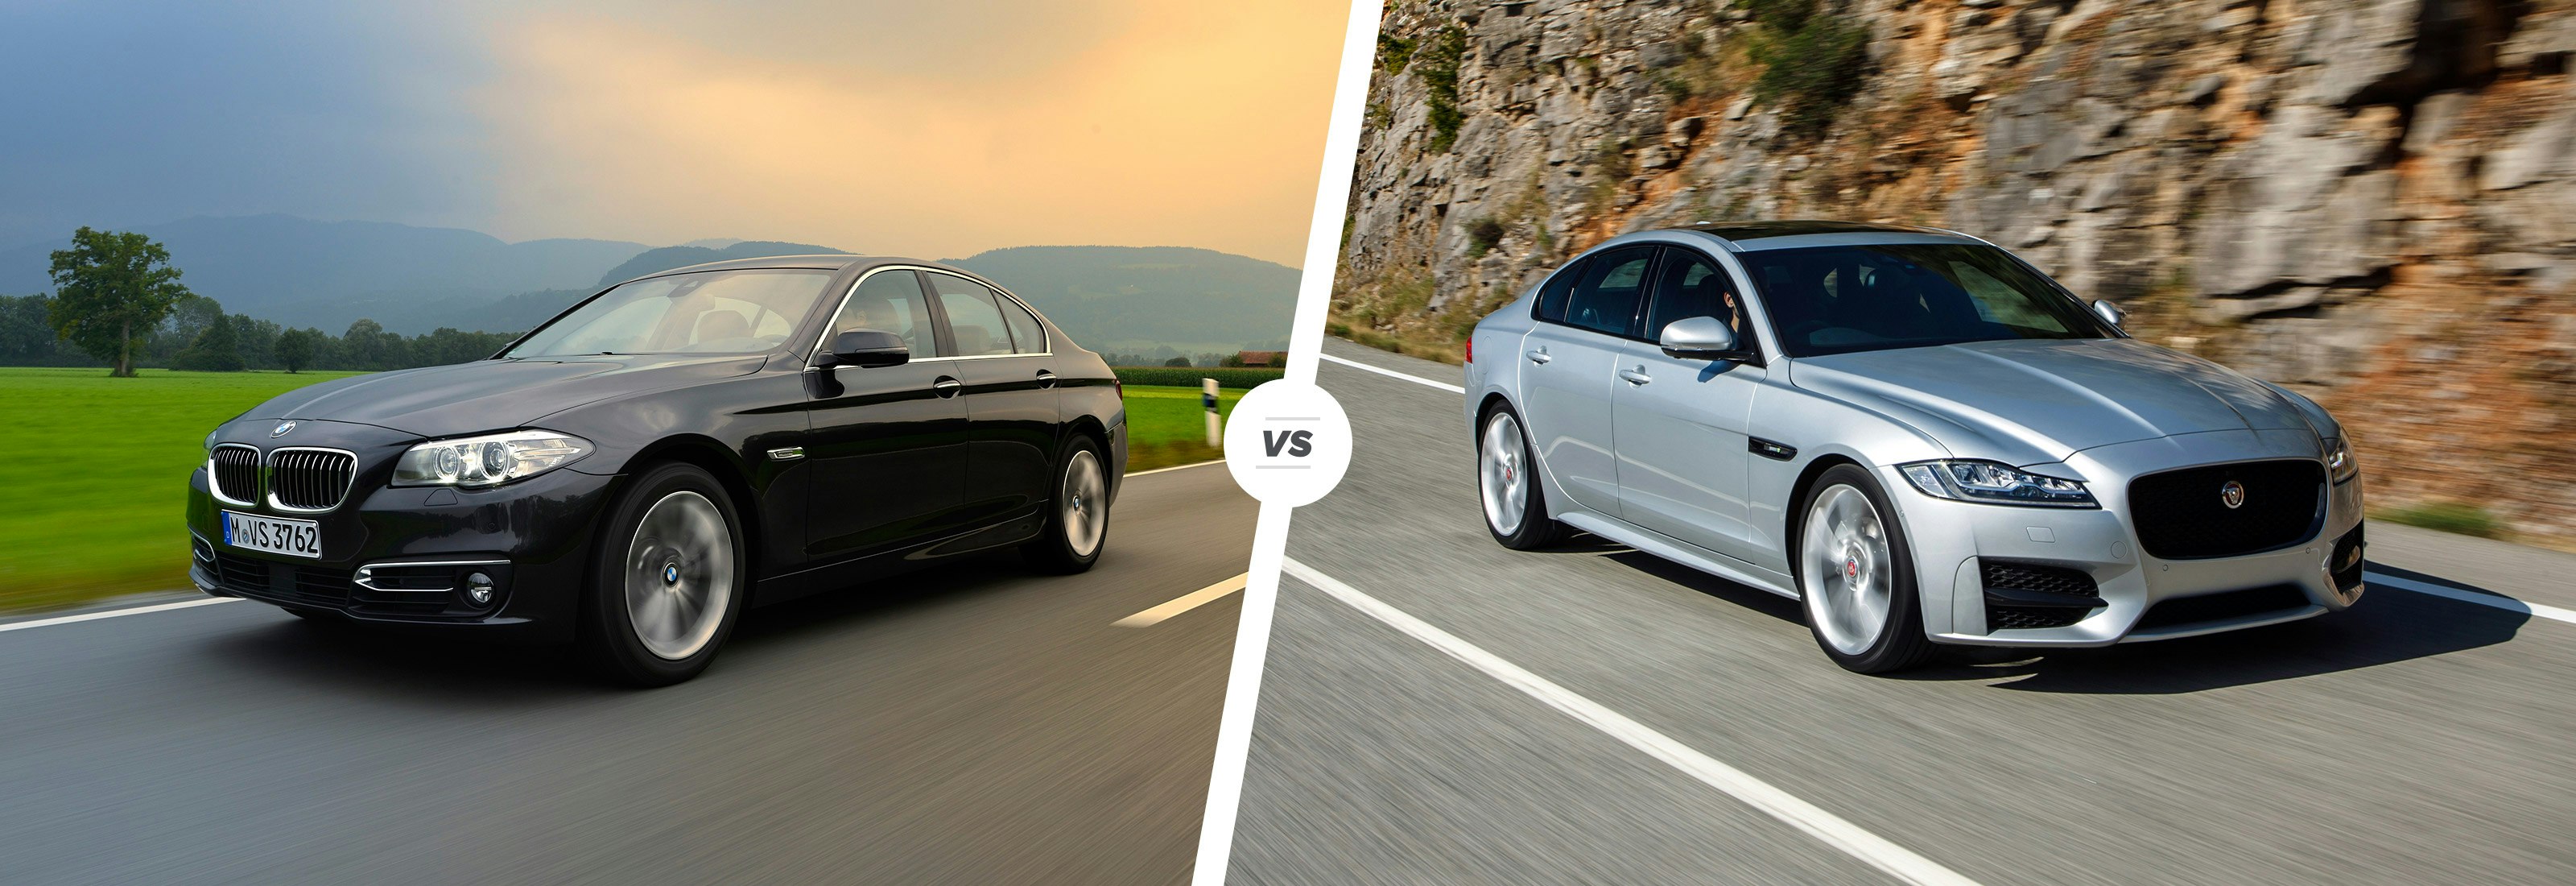 BMW 5 Series vs Jaguar XF Comparison  Prices Specs Features